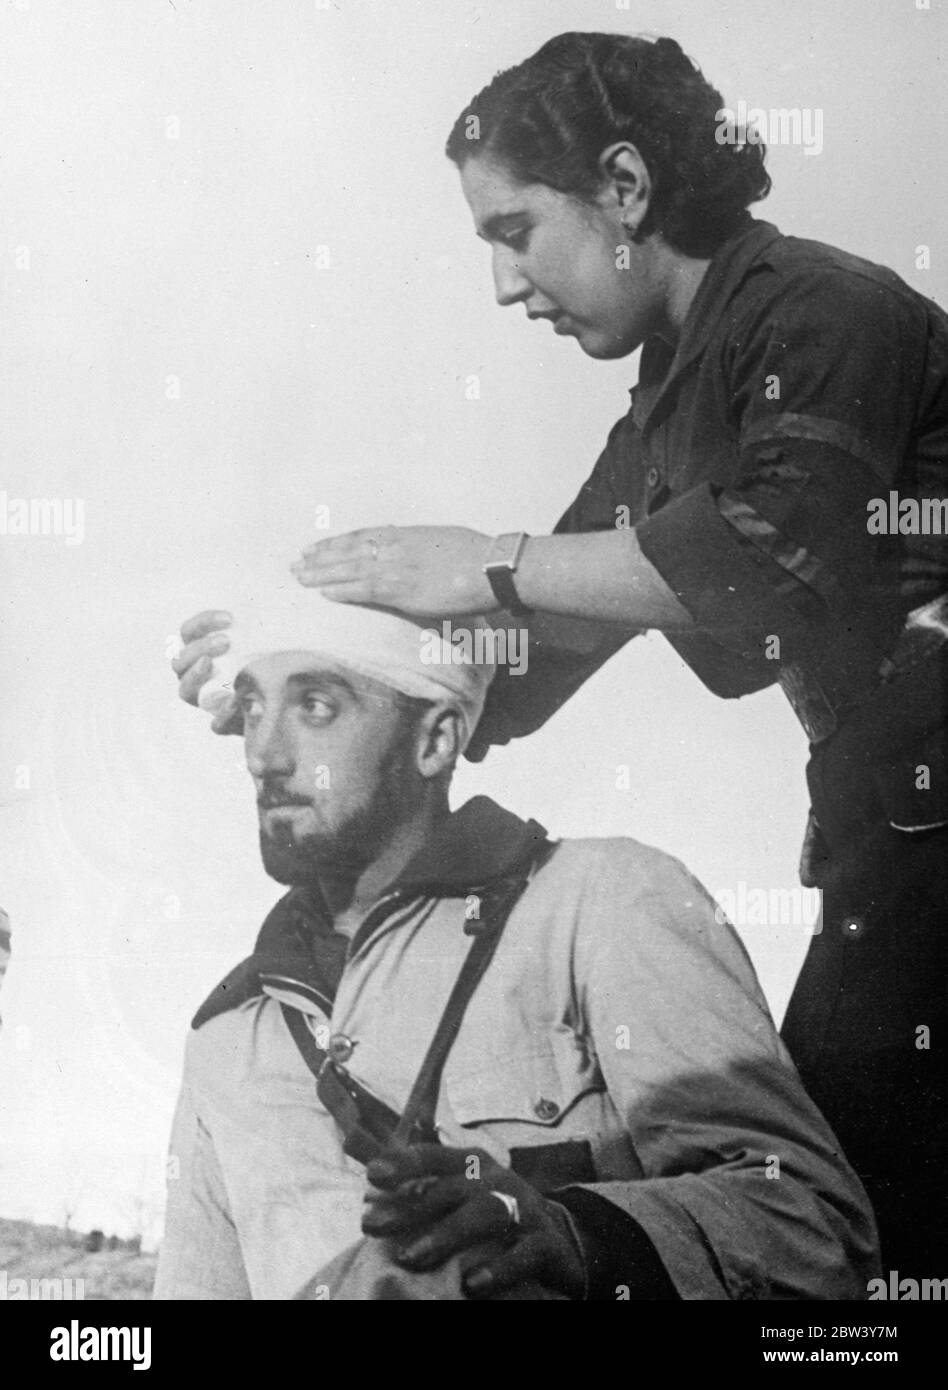 Primo soccorso dietro le linee ribelli . Un' infermiera bendò sapientemente il capo di un membro ferito del corpo dei falangisti (fascisti) attaccato alle truppe ribelli di Franco , in un posto di pronto soccorso dietro le linee dopo un attacco ribelle al sud di Madrid . 8 marzo 1937 Foto Stock